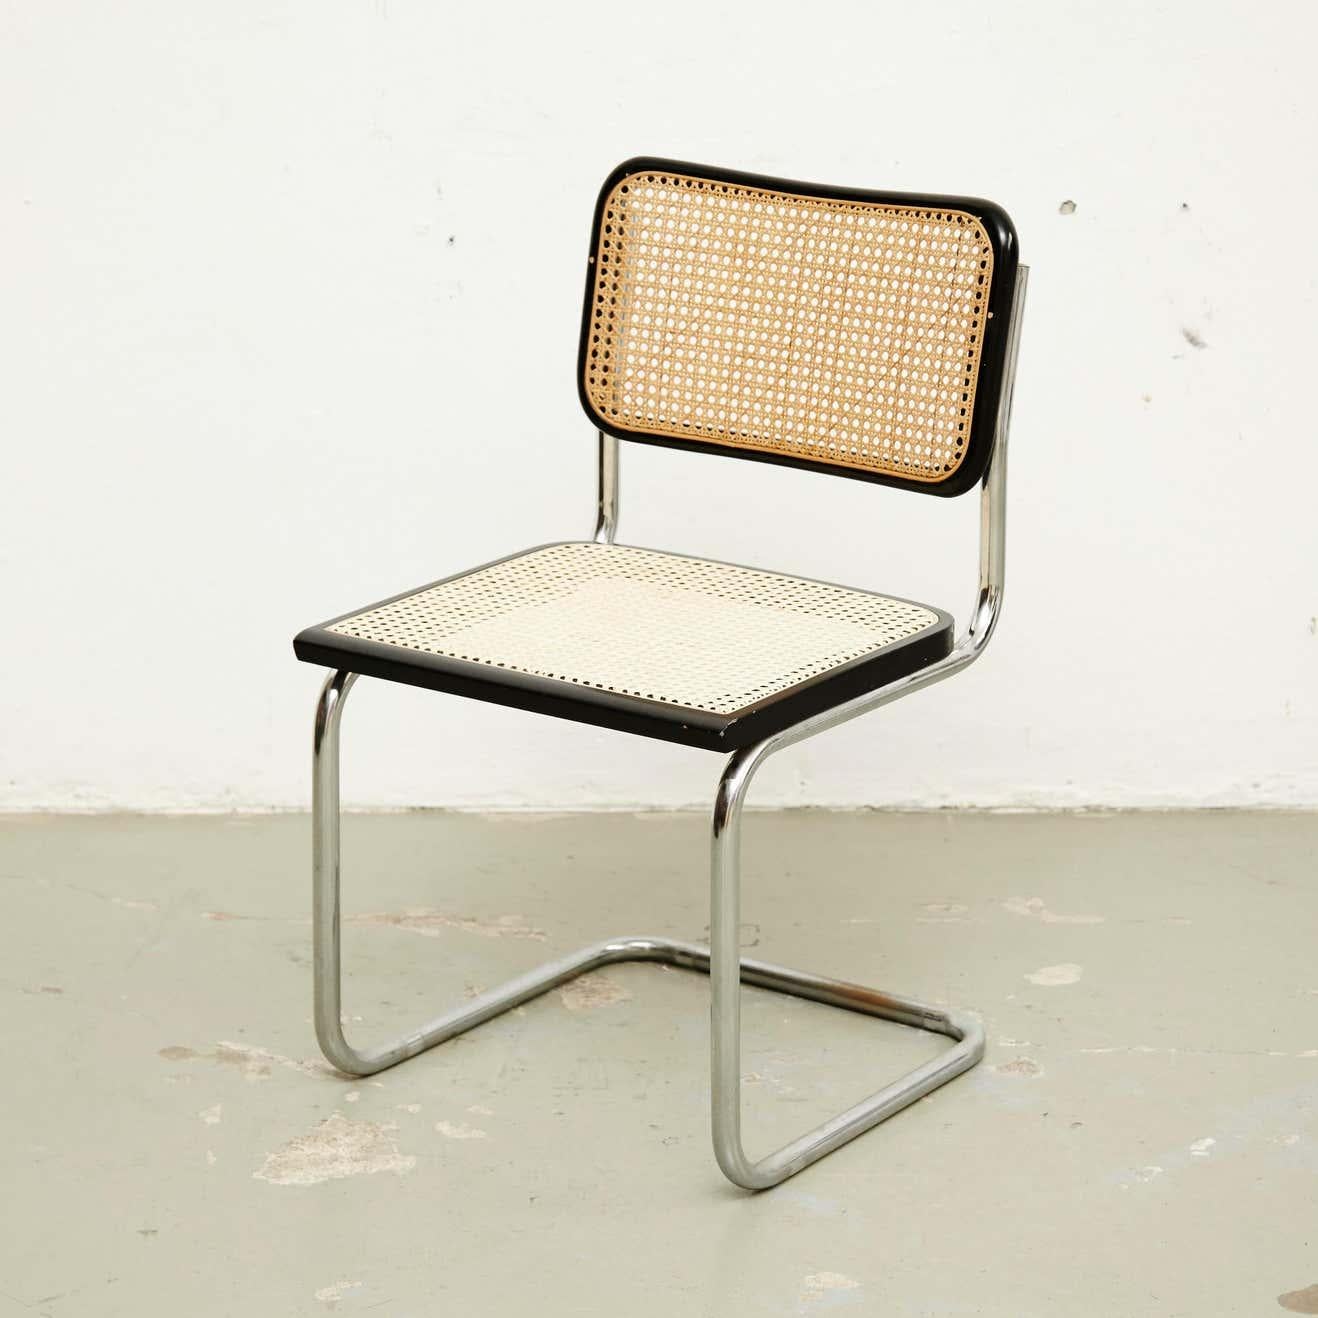 Cane Marcel Breuer Cesca Chair, circa 1980